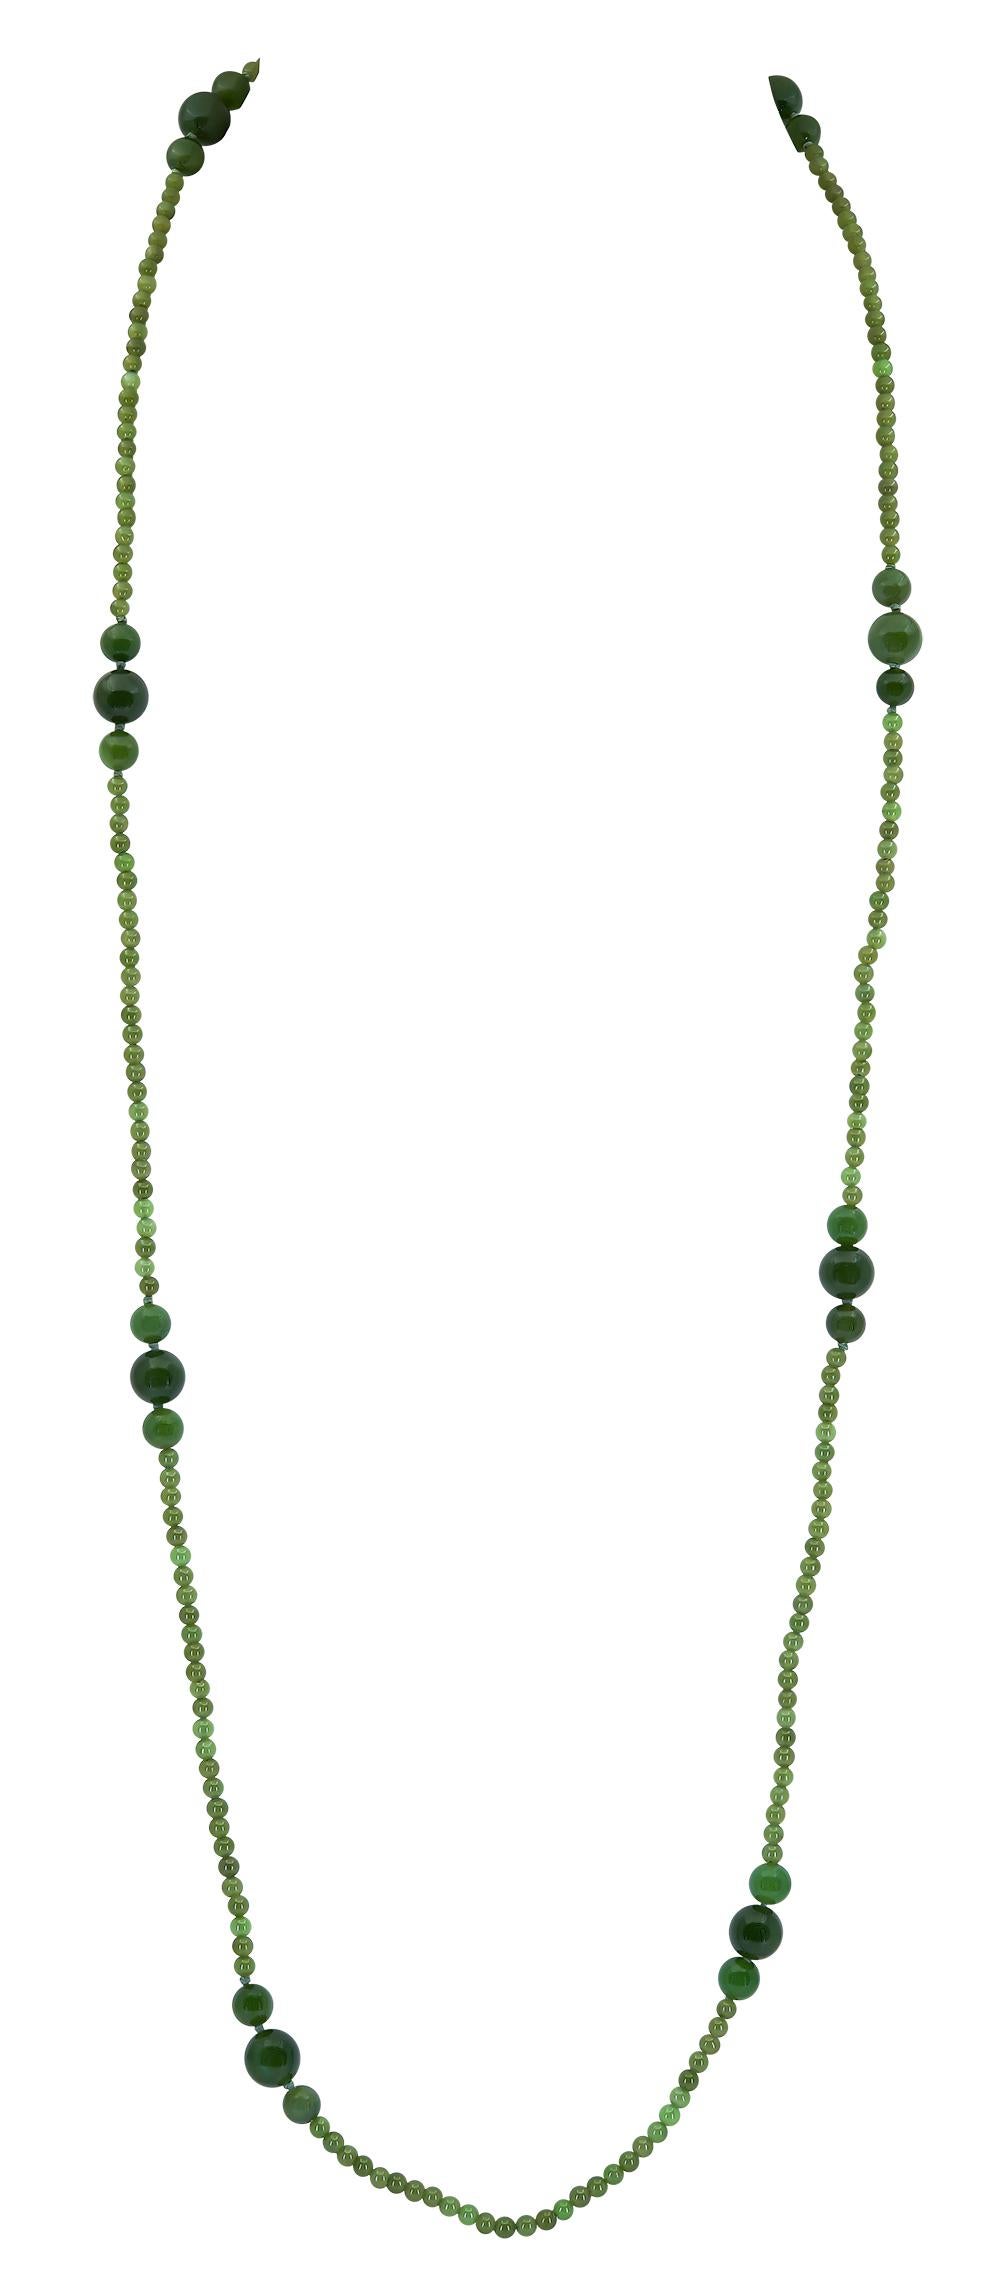 natural green jade pendant